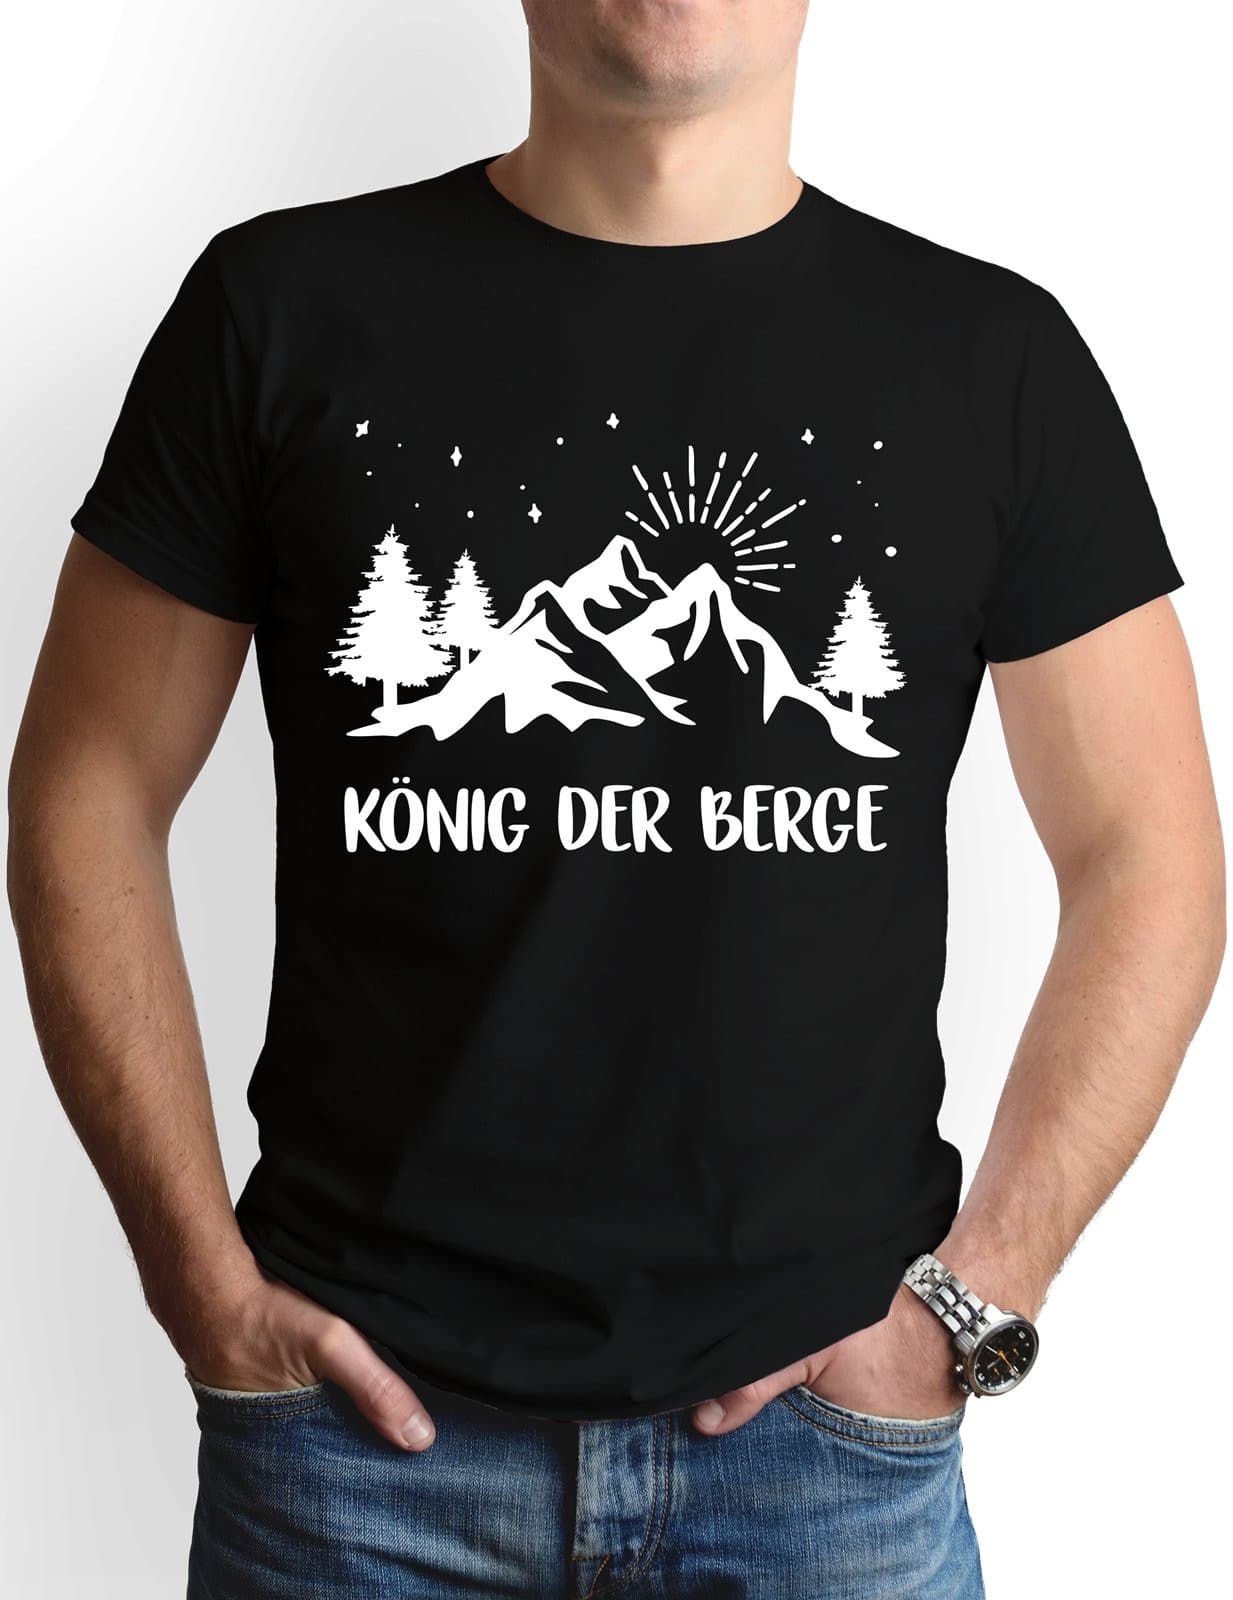 Bild: T-Shirt Herren - König der Berge Geschenkidee